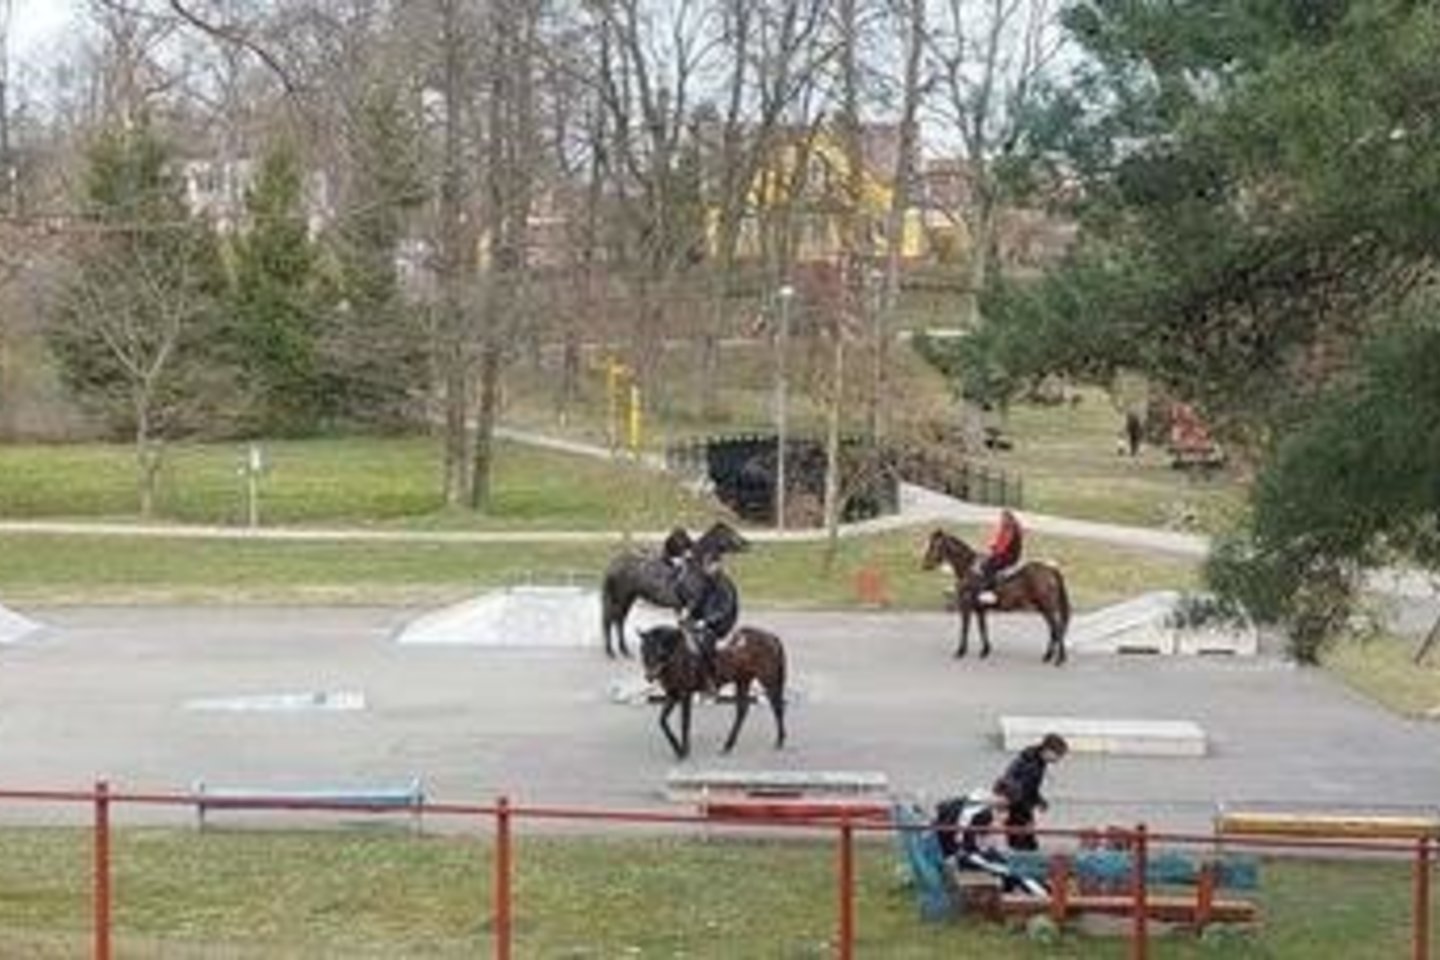 Į redakciją kreipėsi skaitytojai, kurie klausė, ar yra ribojimų jodinėti arkliais po Jurbarką.<br>www.jurbarkosviesa.lt nuotr.